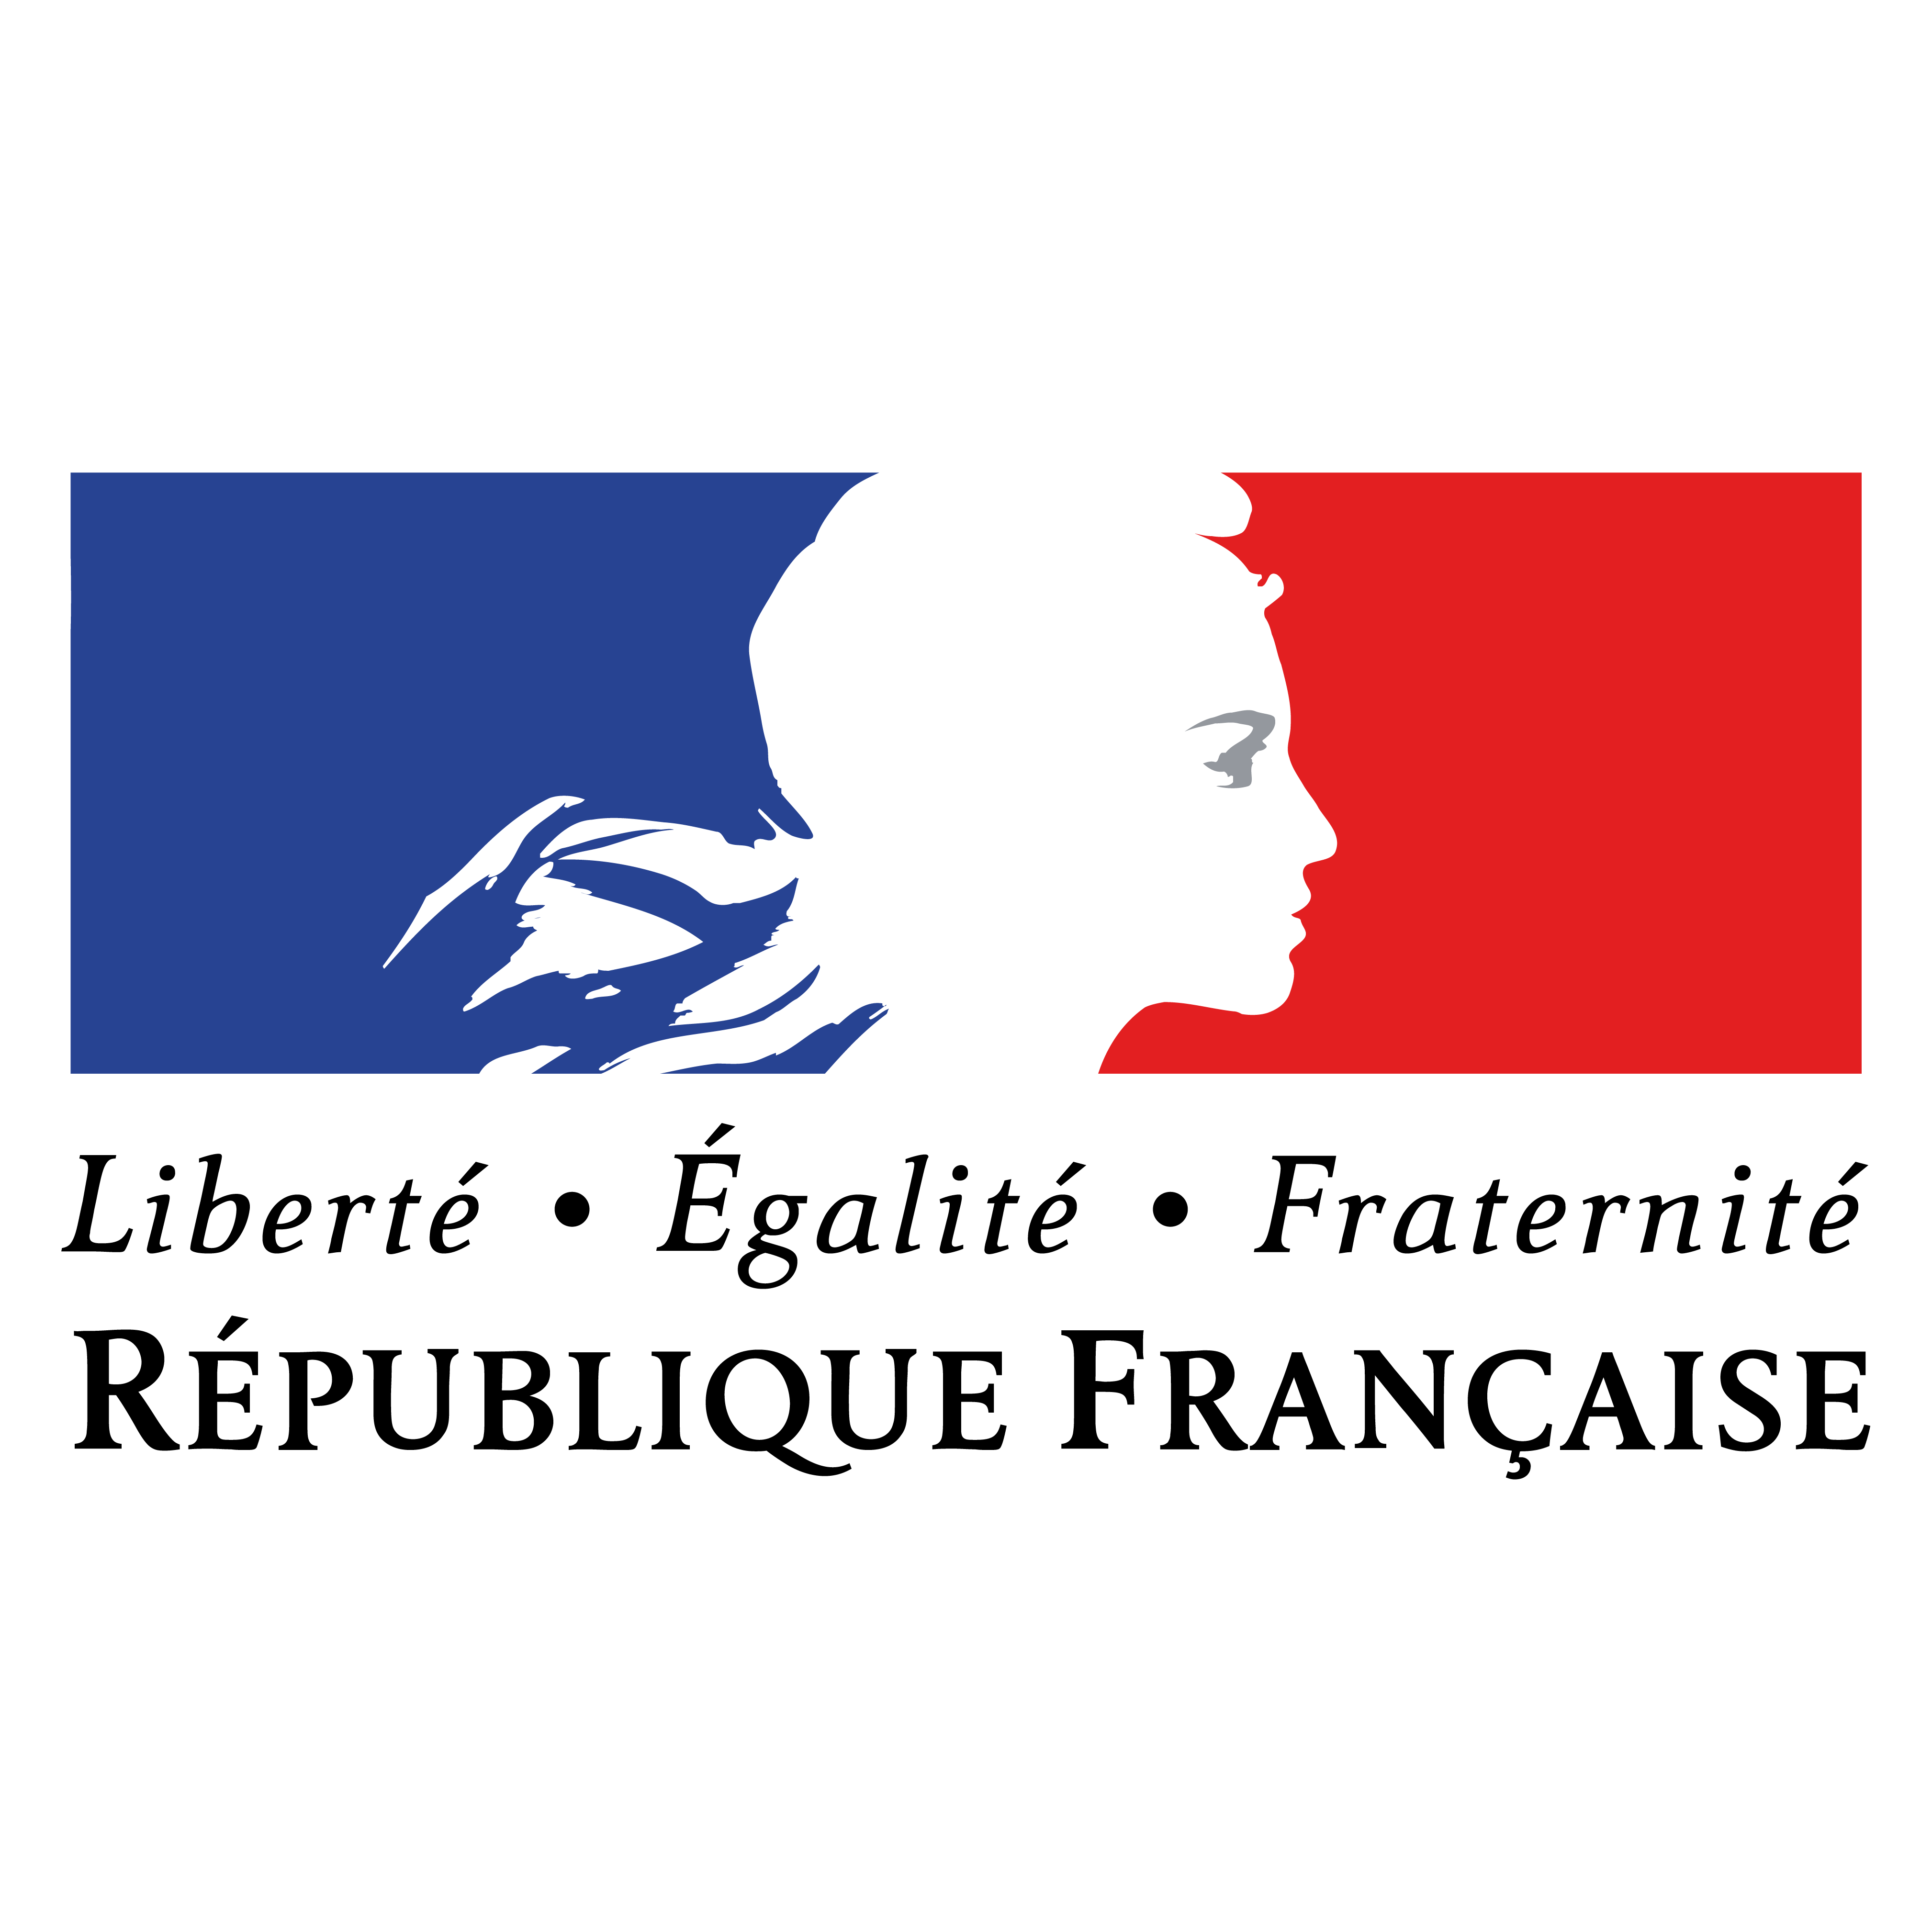 Француз свобода